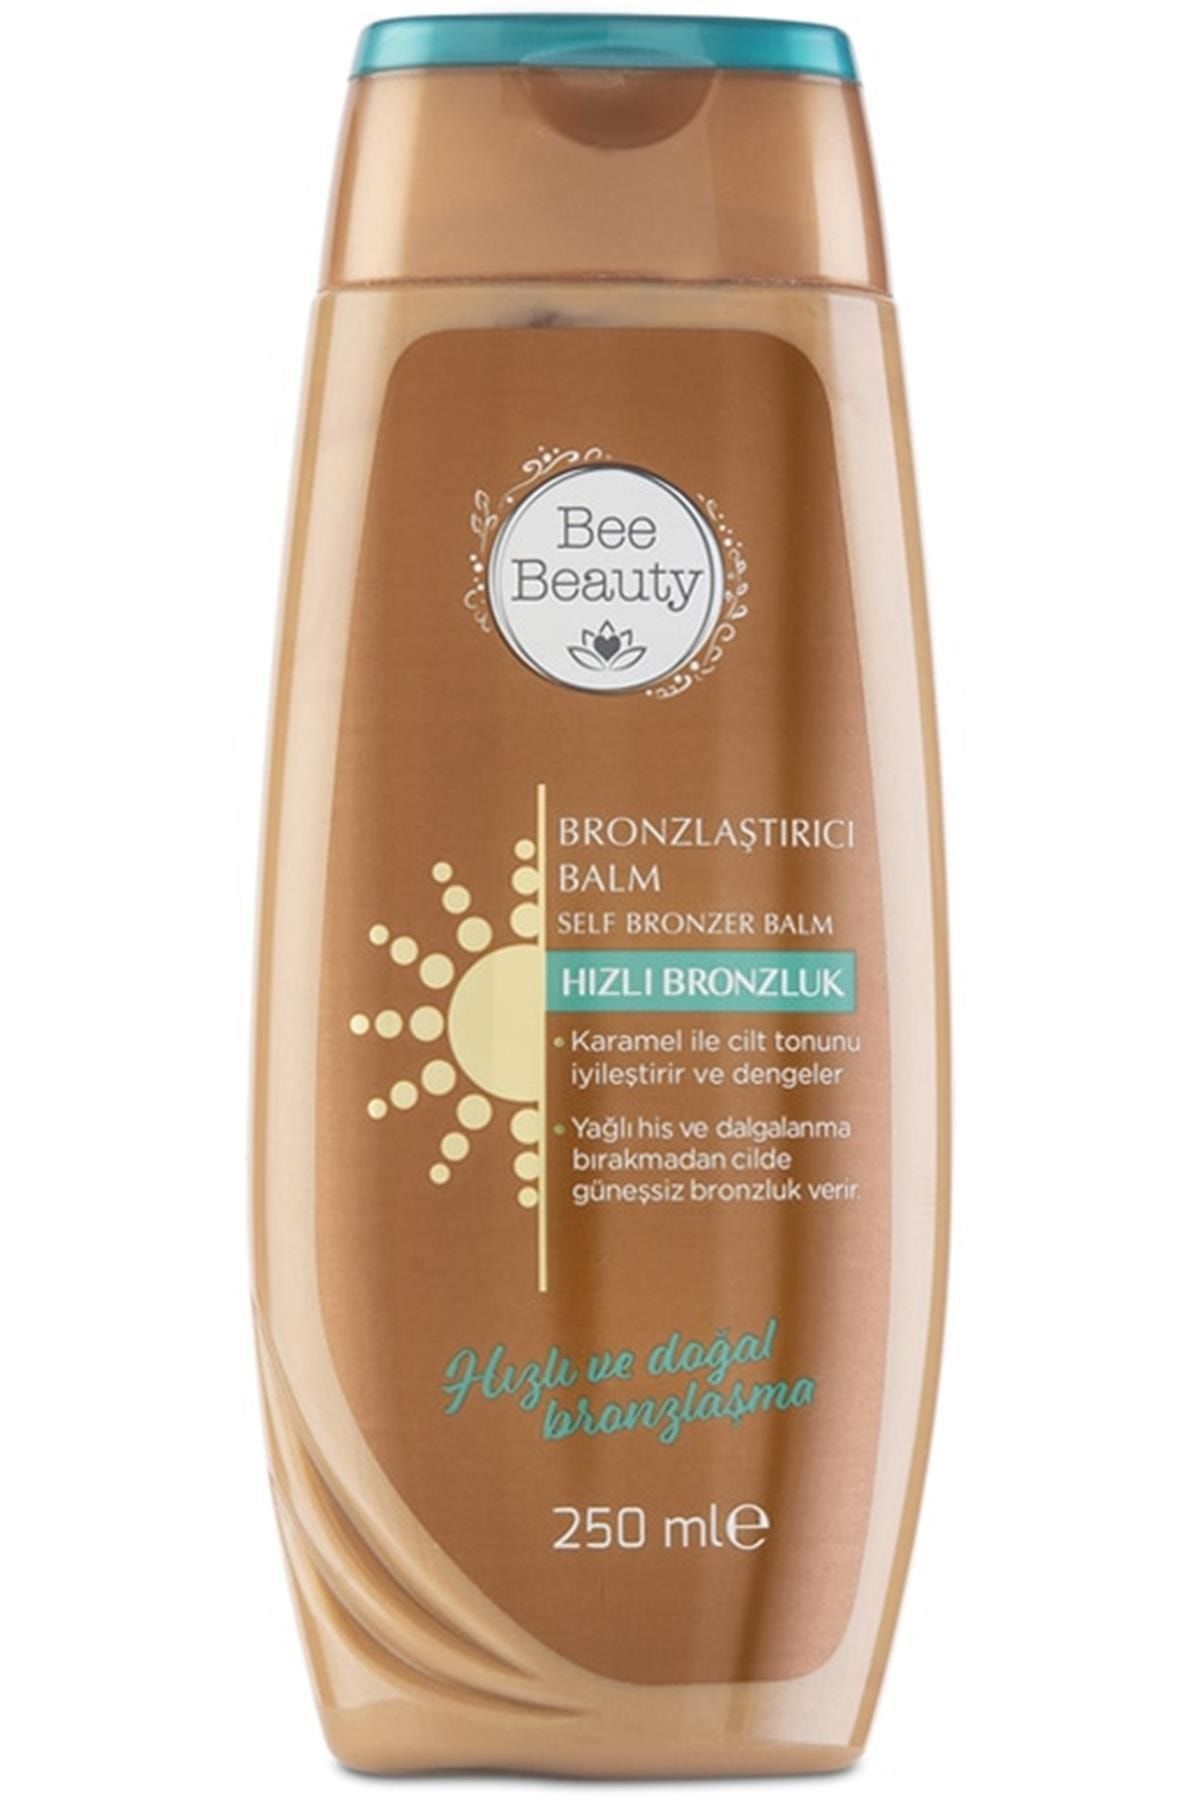 Bee Beauty Marka: Bronzlaştırıcı Balm 250 Ml Kategori: Vücut Güneş Kremi